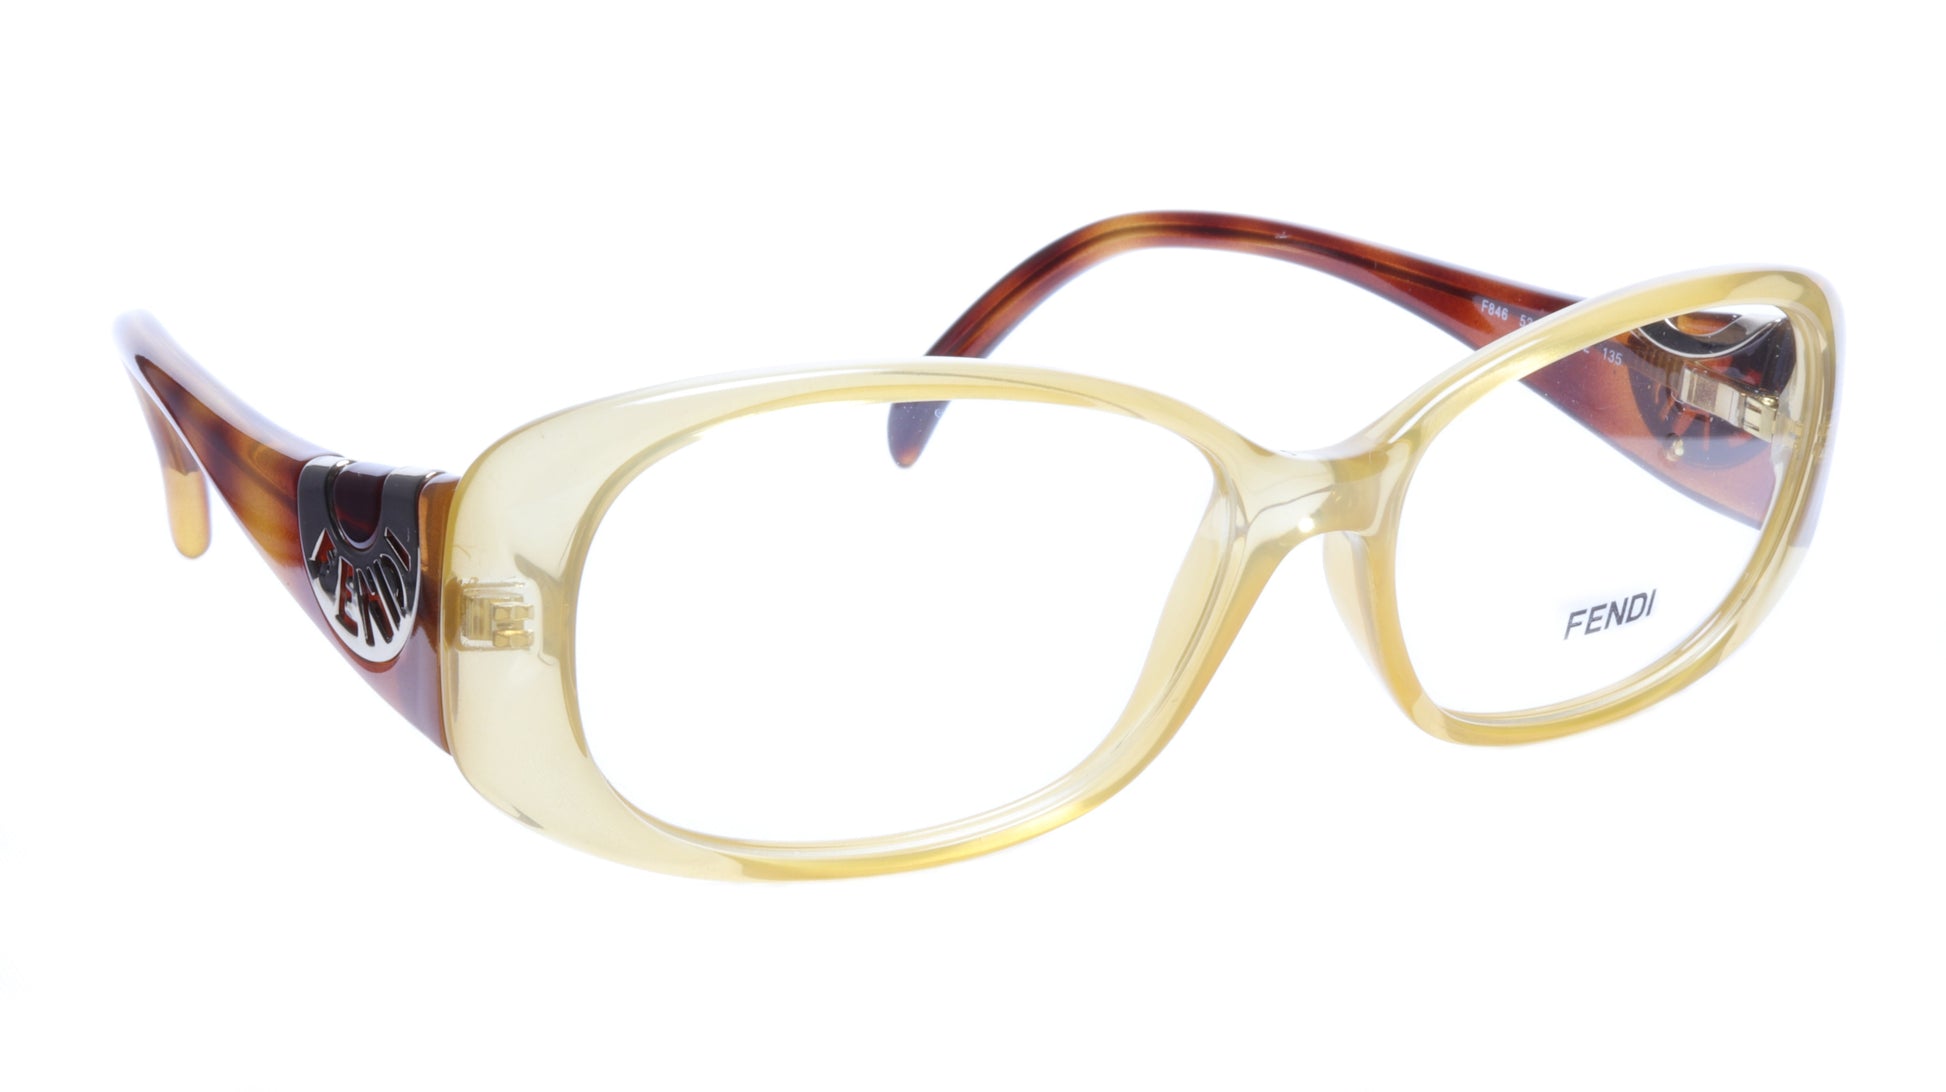 FENDI Eyeglasses Frame F846 (832) Acetate Tangerine Italy Made 53-14-135, 36 - Frame Bay